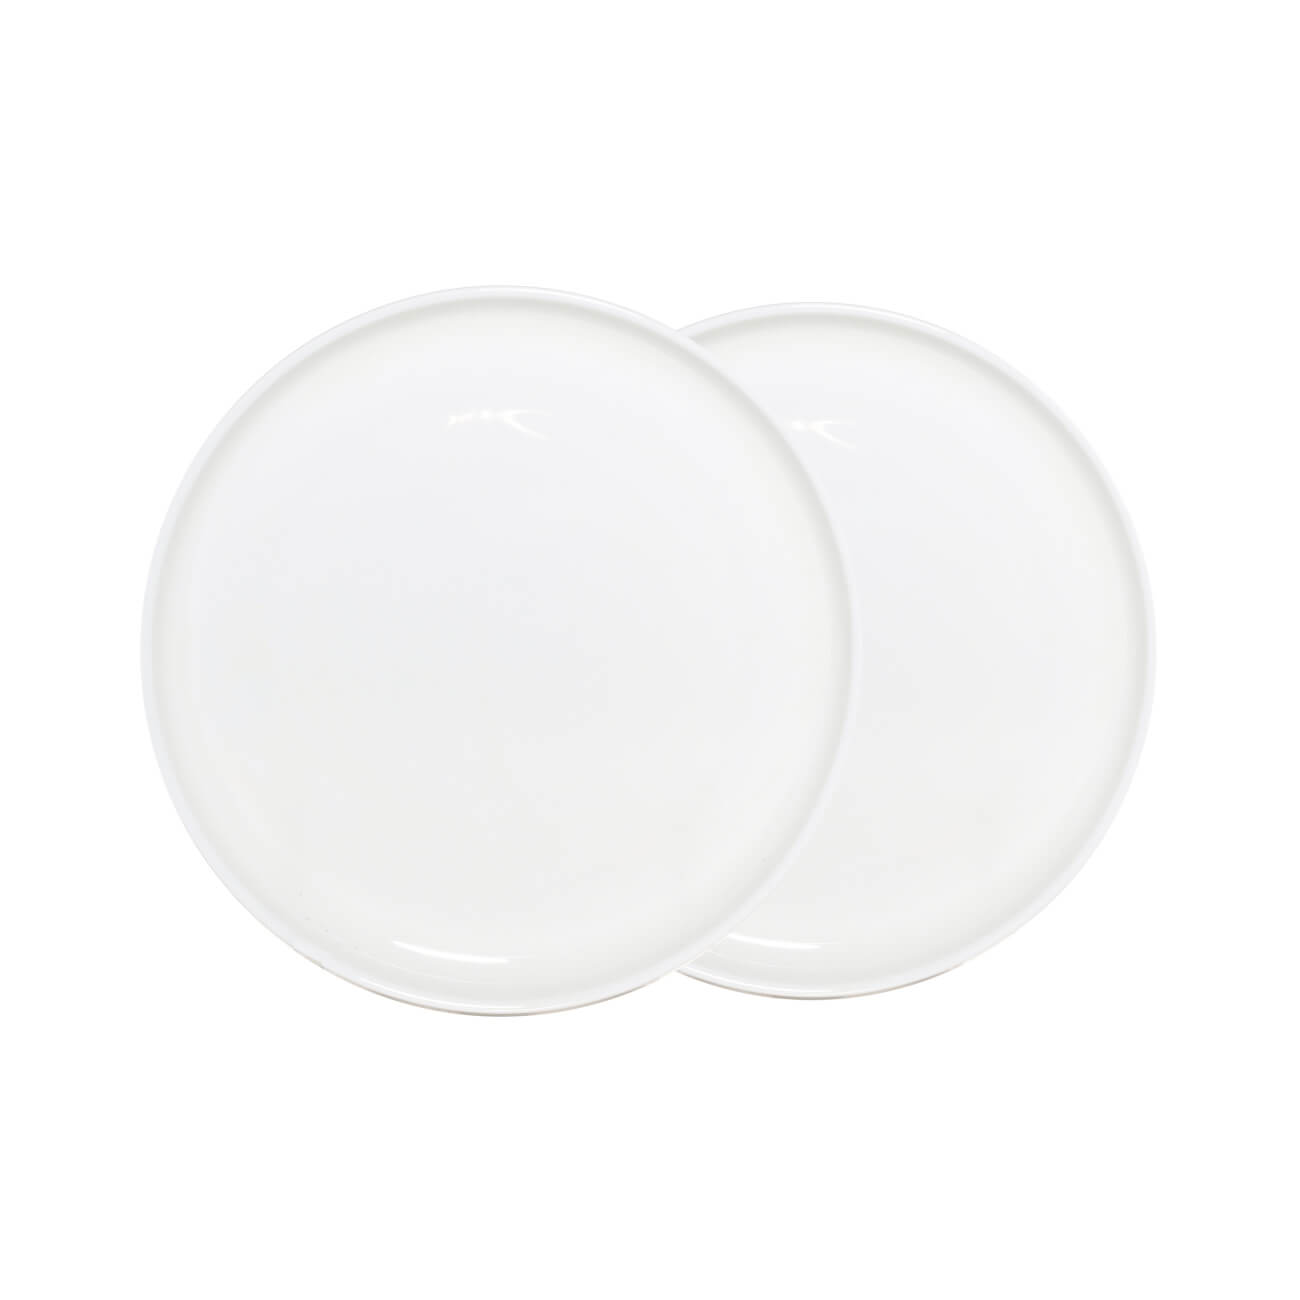 Тарелка десертная, 20 см, 2 шт, фарфор F, белая, Ideal white изображение № 1